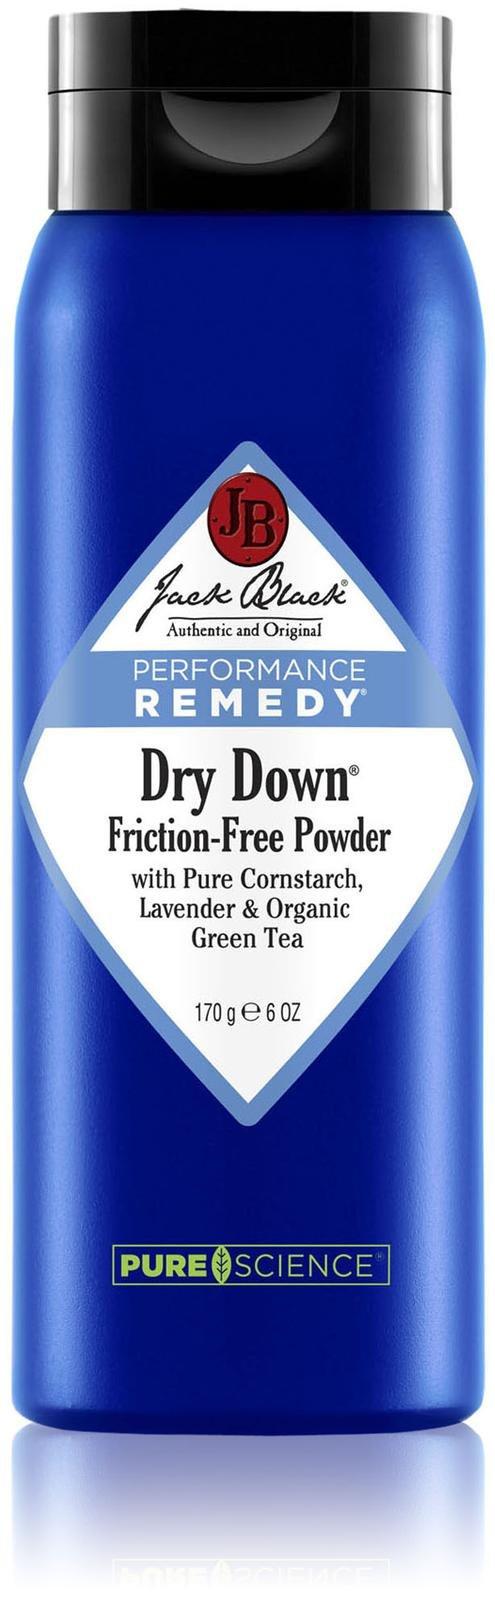 Jack Black Jack's Dry Goods Friction-free Powder